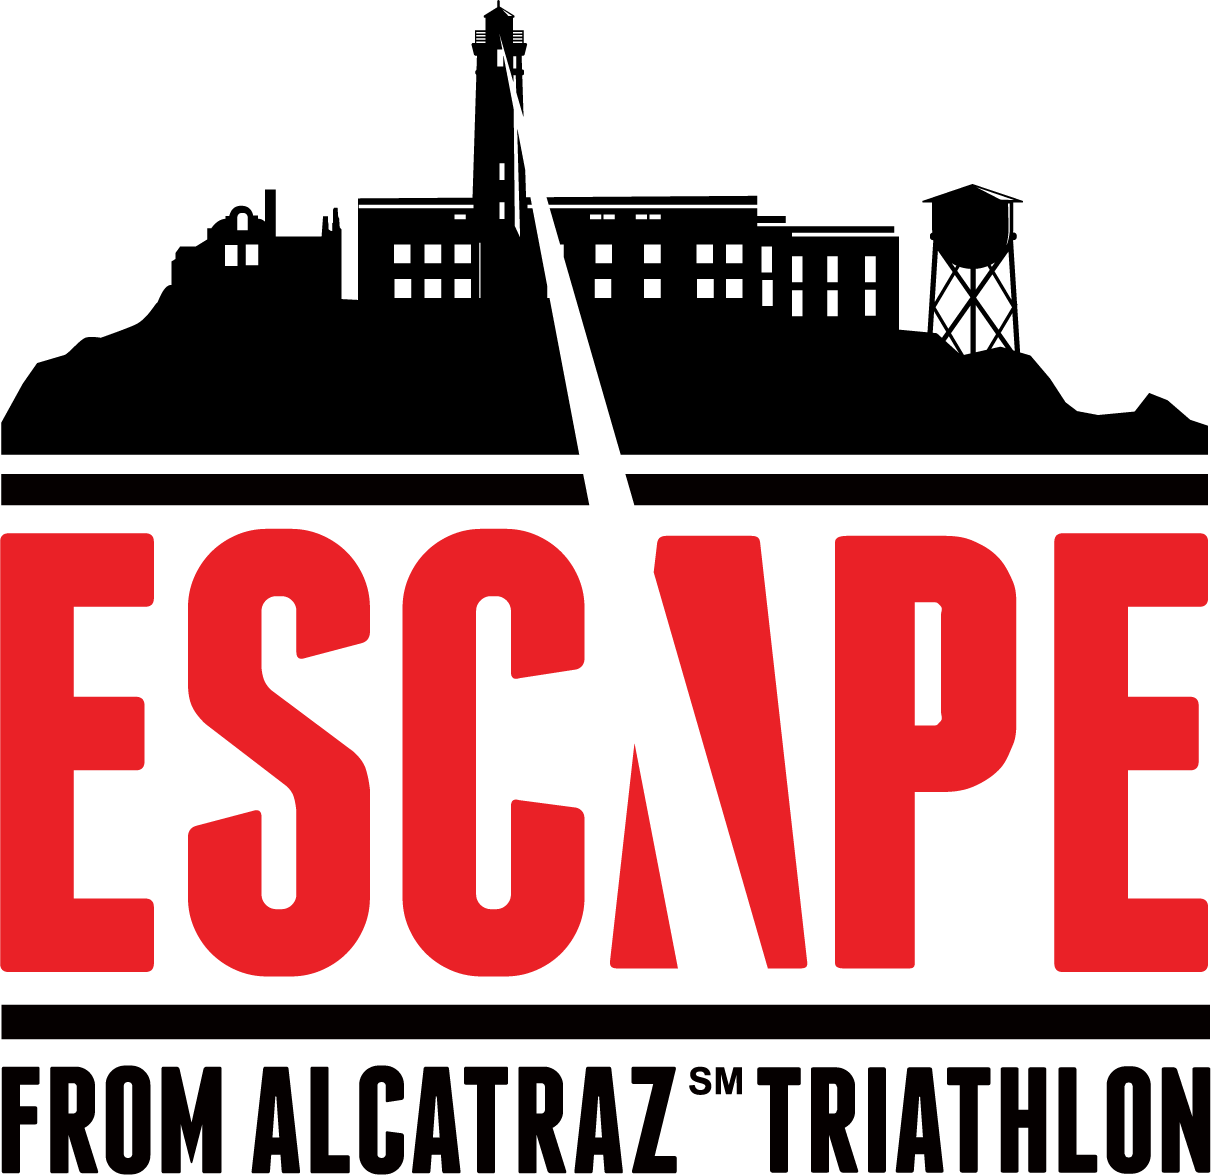 2023 Escape From Alcatraz Triathlon Dates Announced Escape From